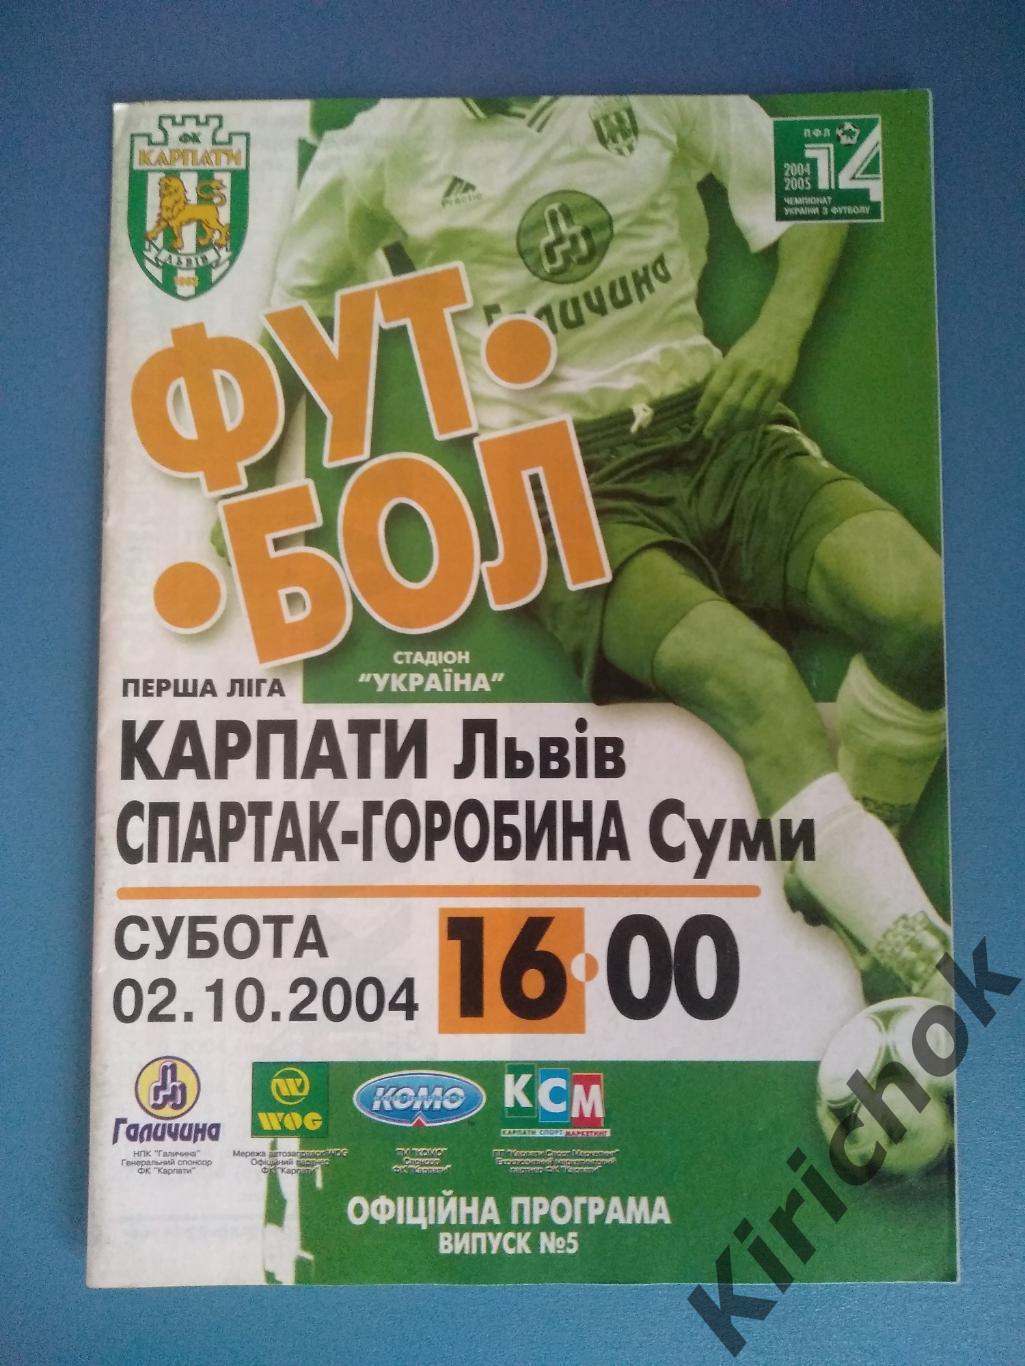 Карпаты Львов - Спартак - Горобына Сумы 2004/2005